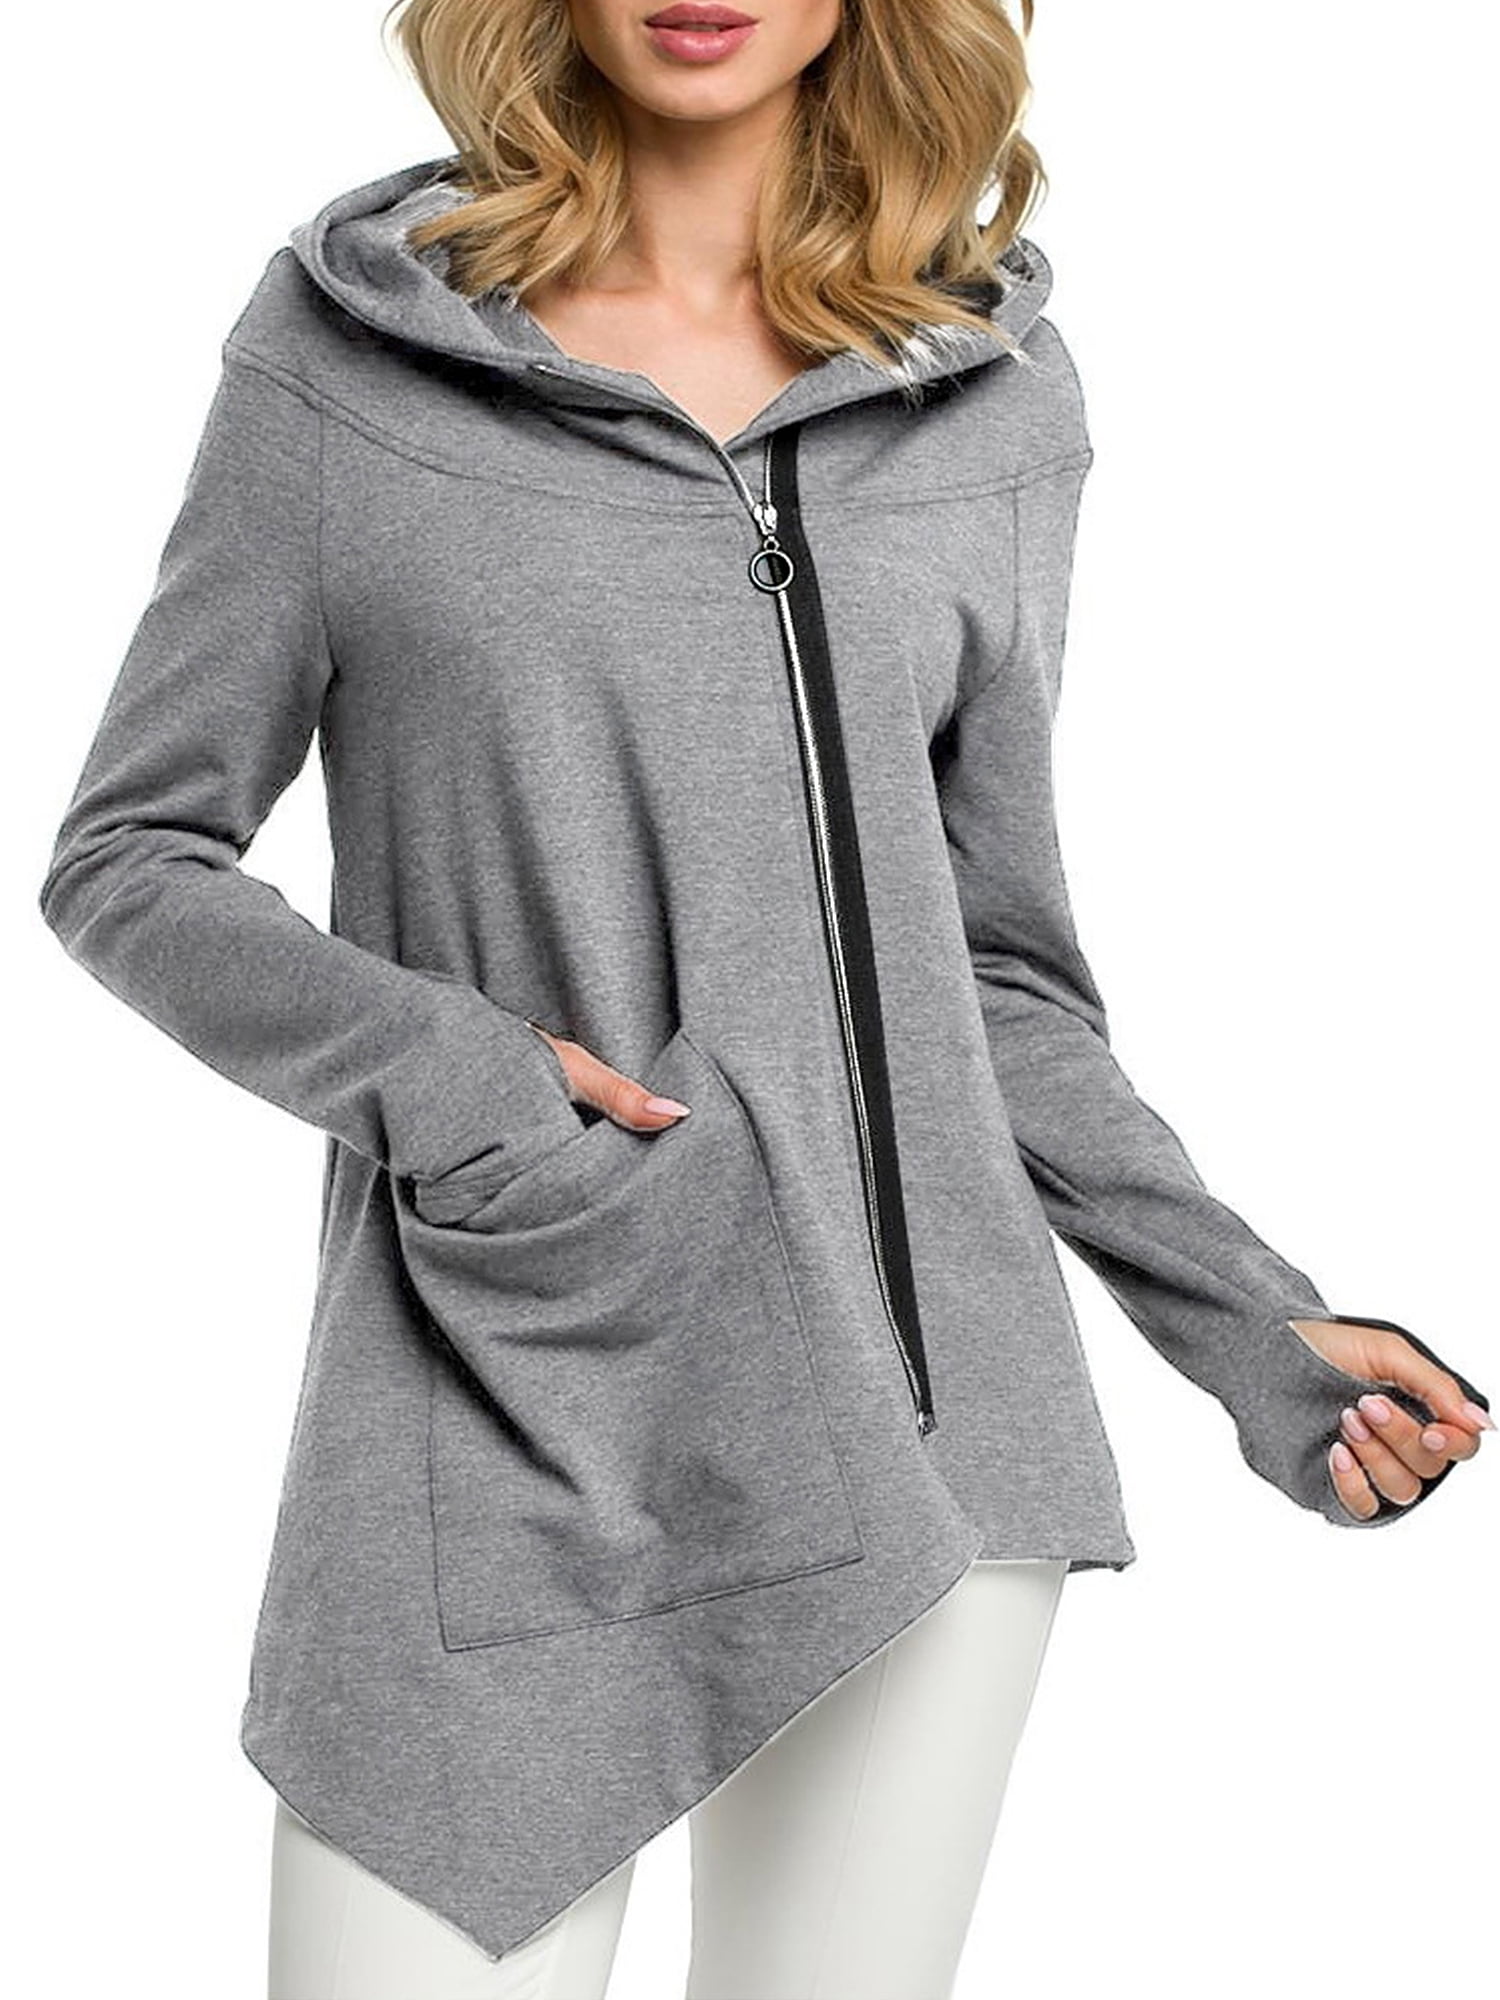 REDMAKER Asymmetrical Hem Button Solid Faux Fleece Sweatshirts for Women Plus Size Hoodie Comfortable Warm Tops